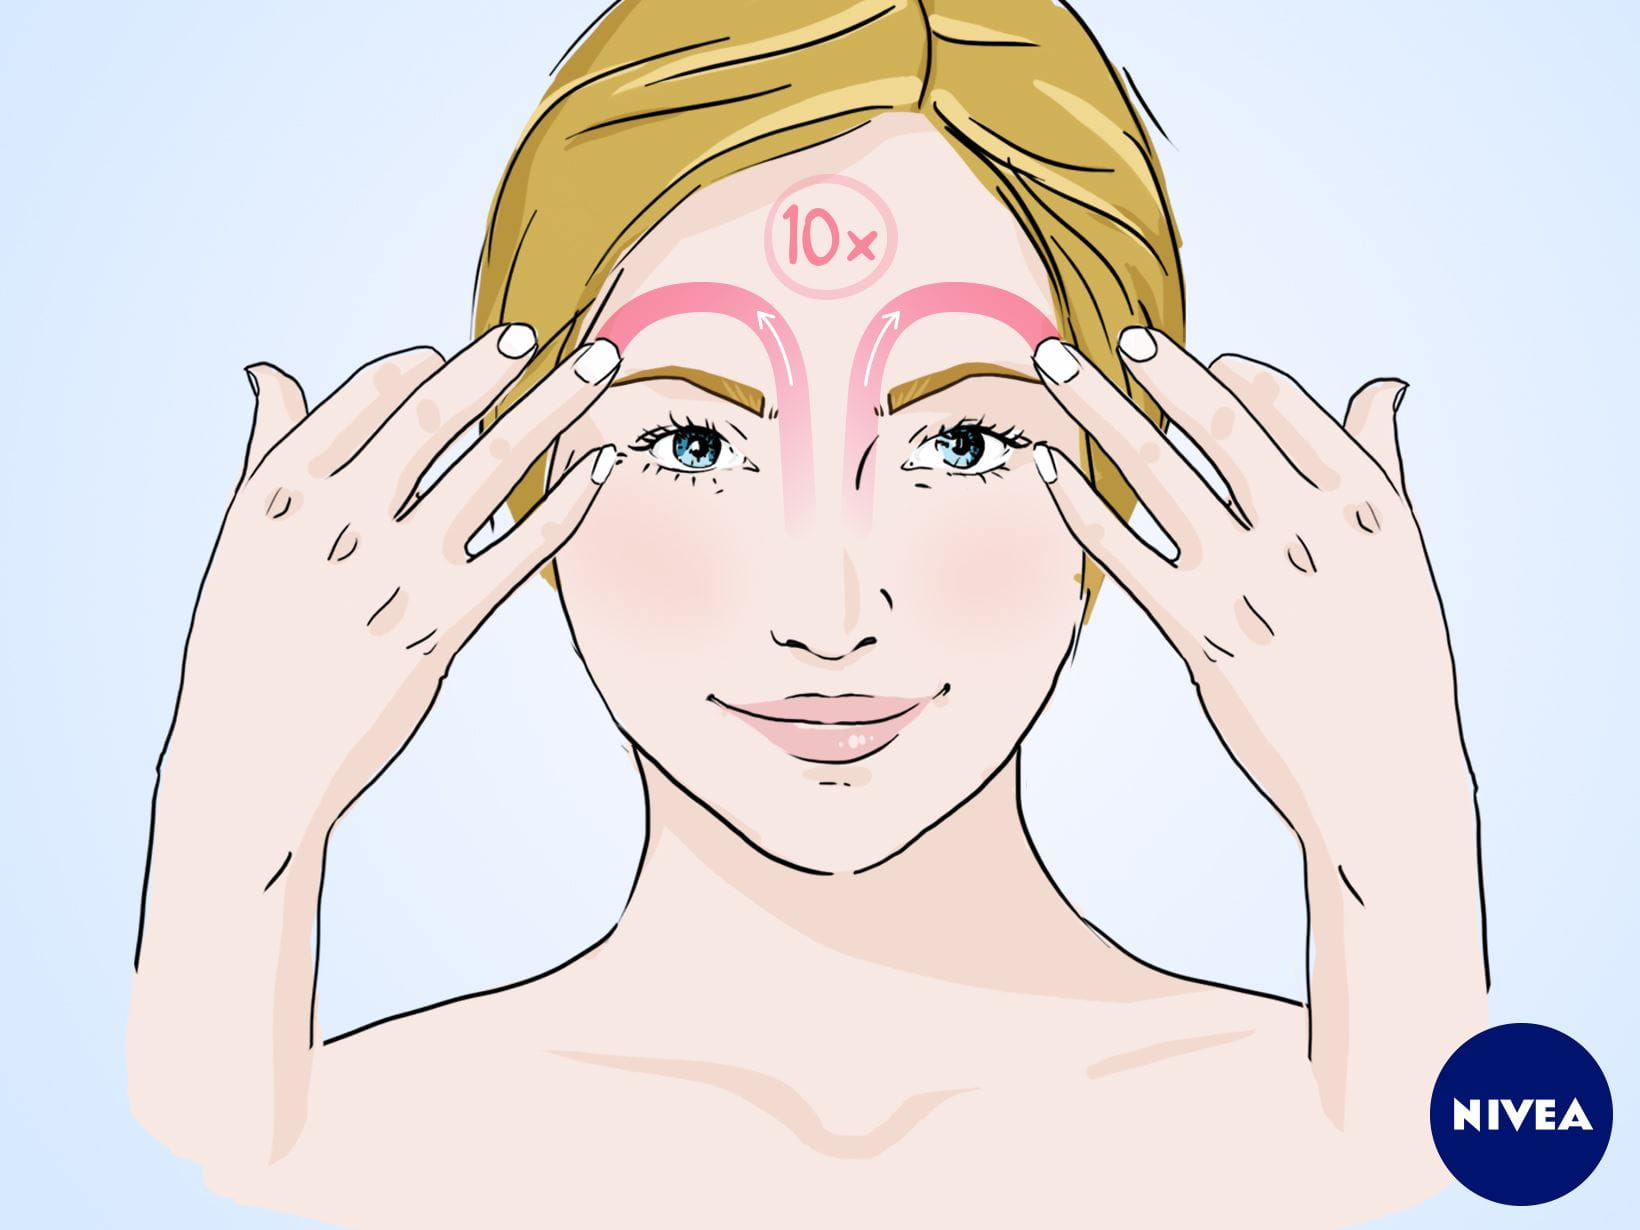 NIVEA Gesichtsmassage-Anleitung: Massagegriff zum Abschalten